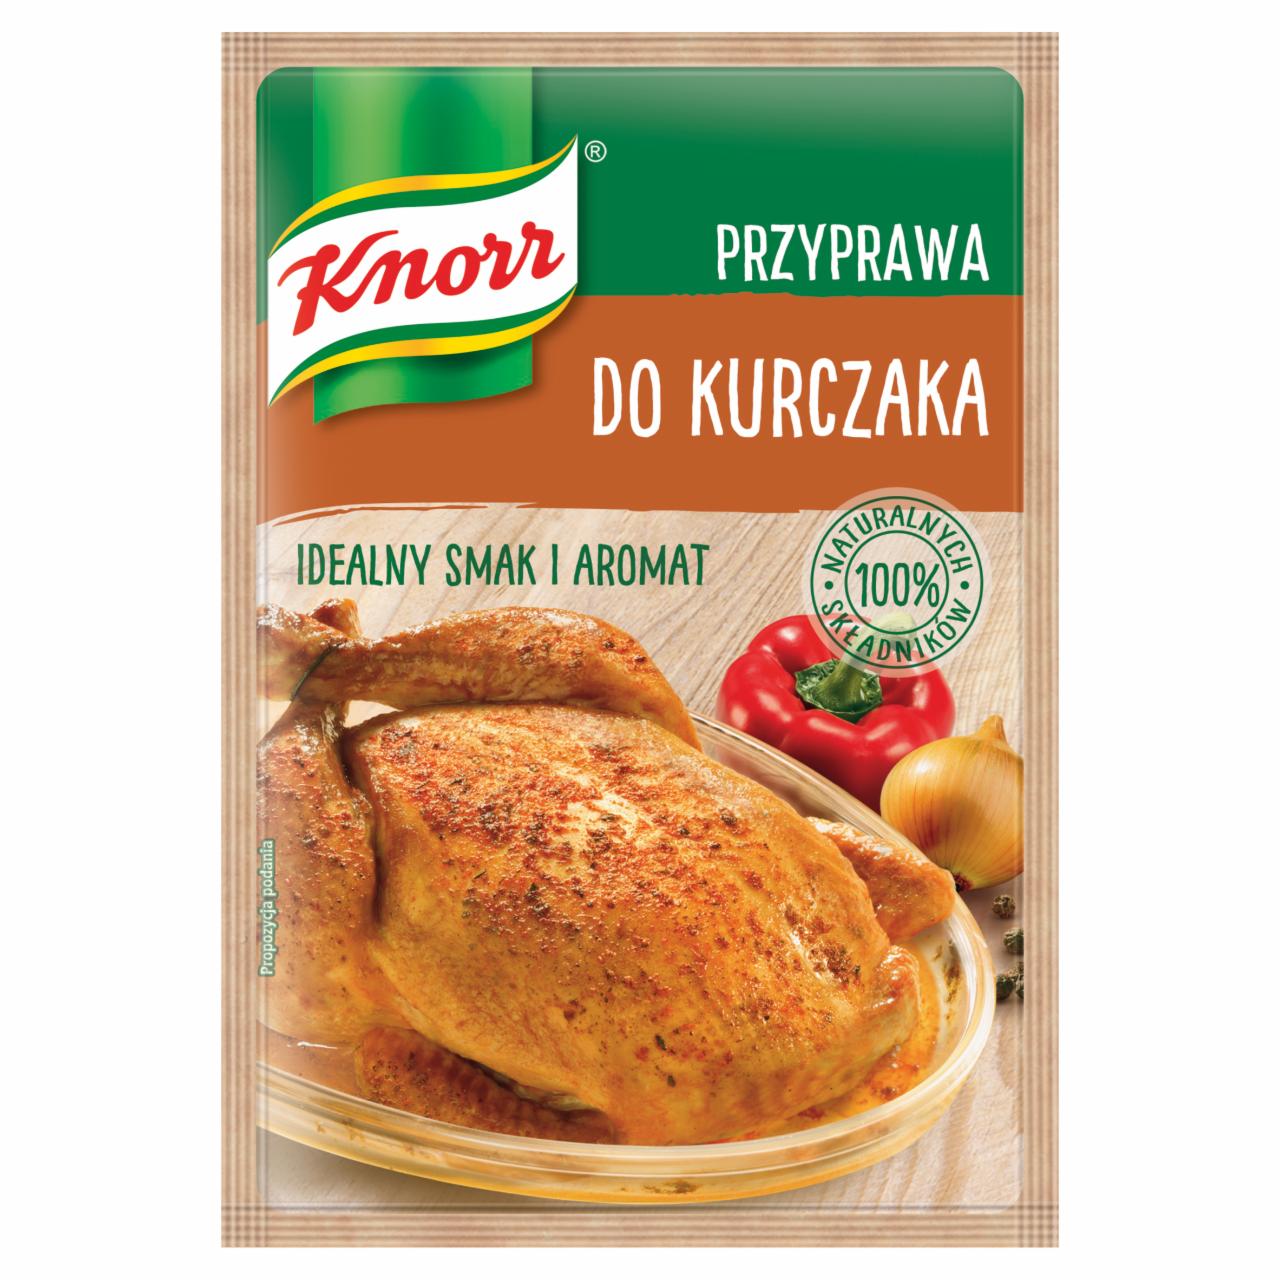 Zdjęcia - Knorr Przyprawa do kurczaka 23 g